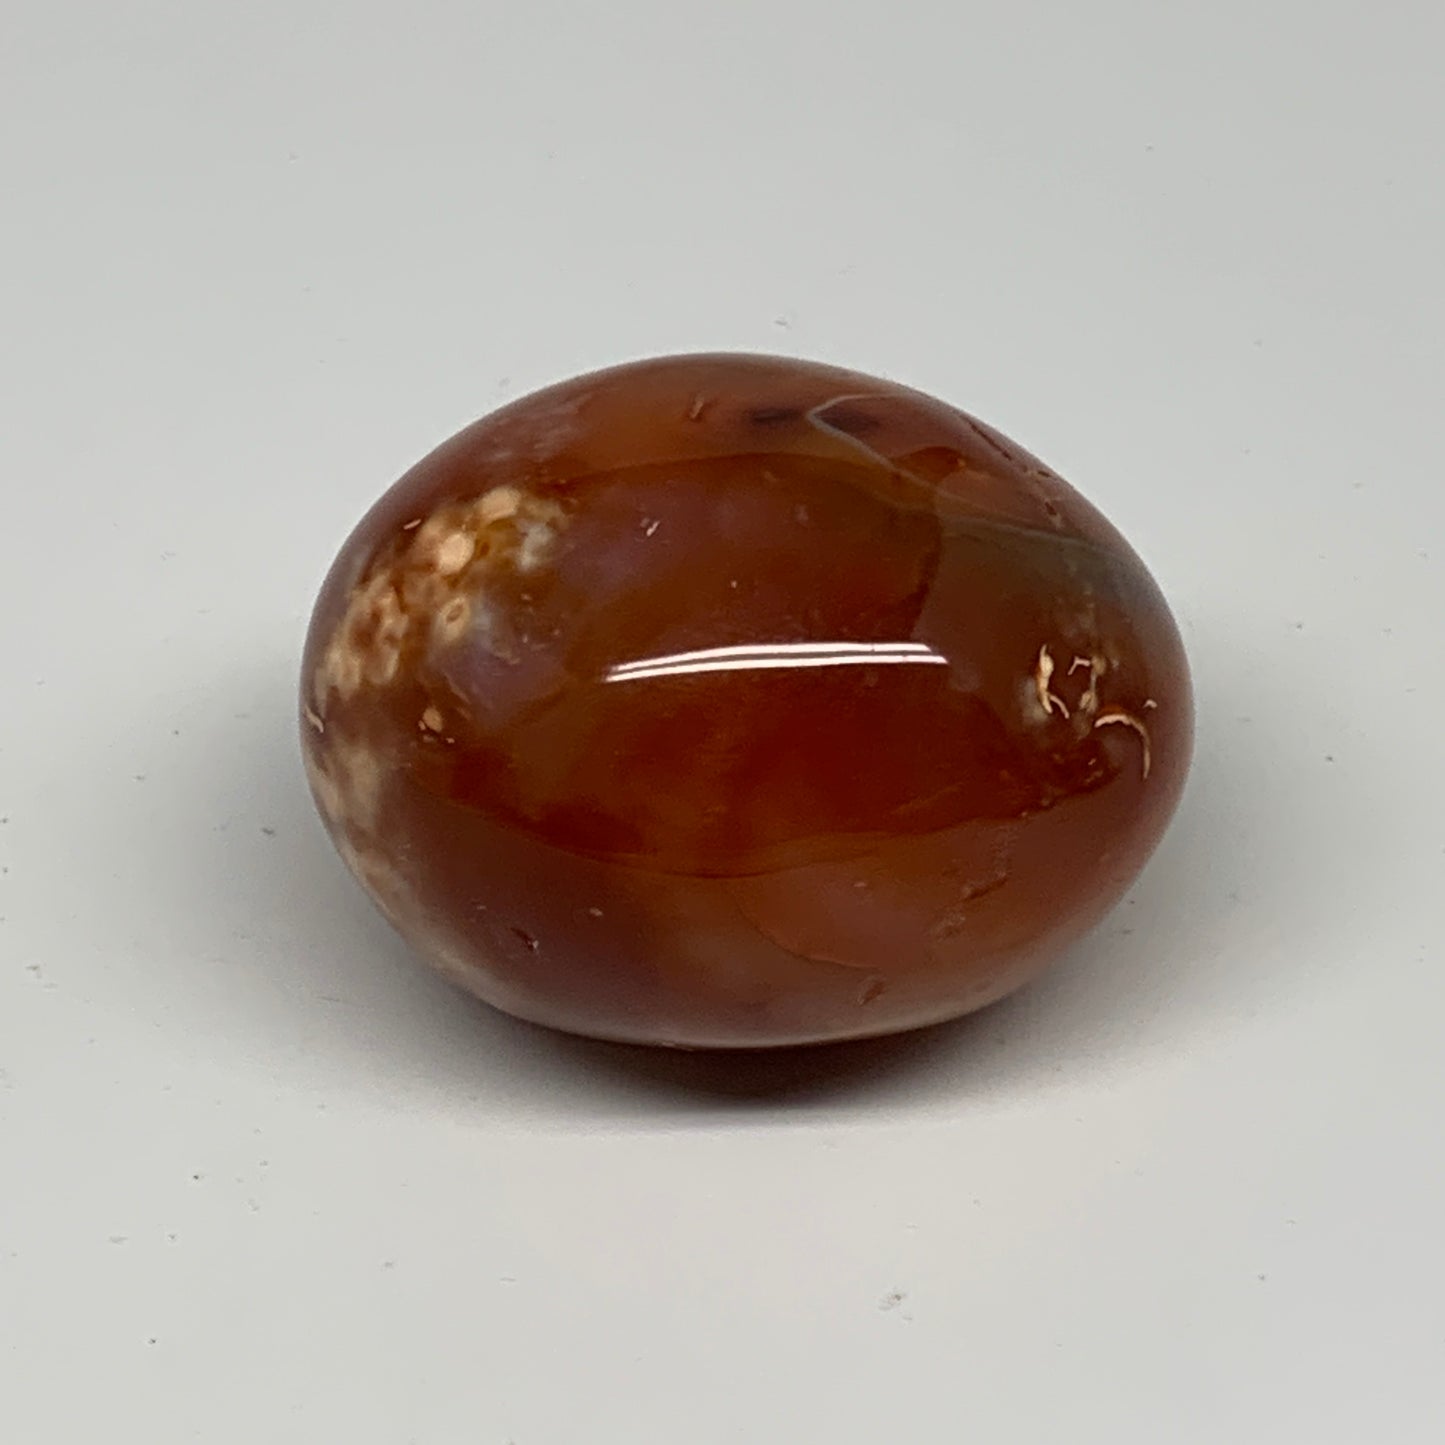 176.7g, 2.4"x1.9"x1.8", Red Carnelian Palm-Stone Gem Crystal Polished, B28428